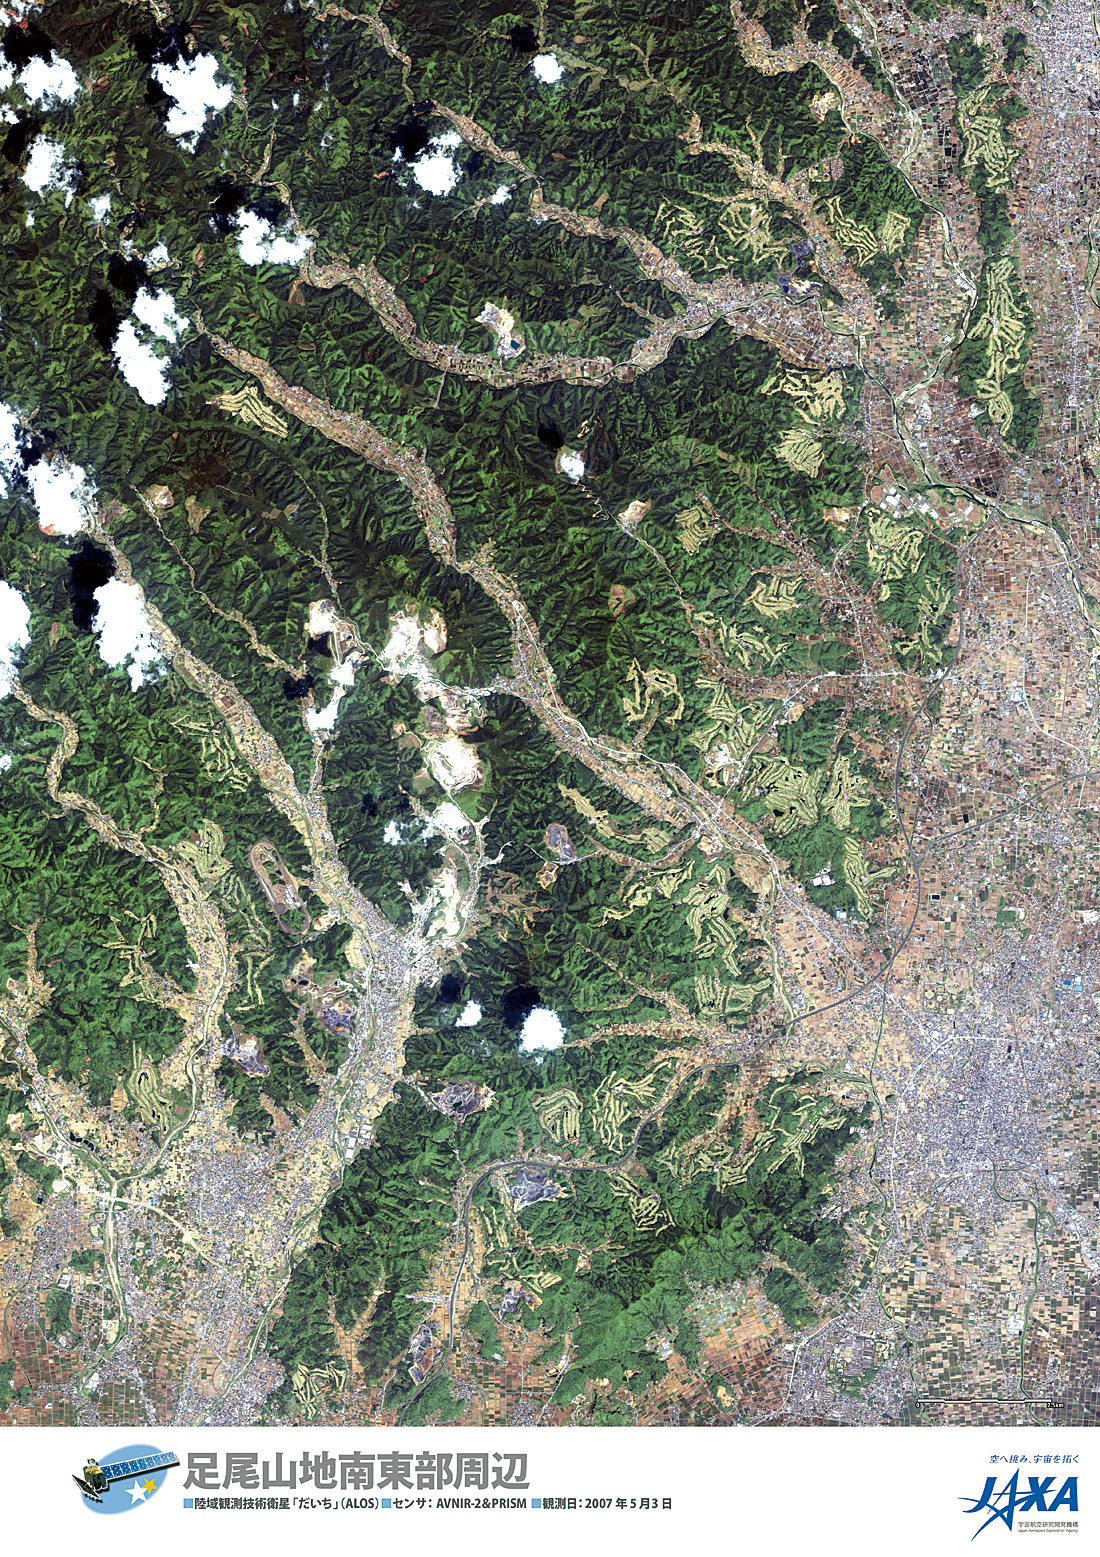 だいちから見た日本の都市 足尾山地南東部周辺:衛星画像（ポスター仕上げ）